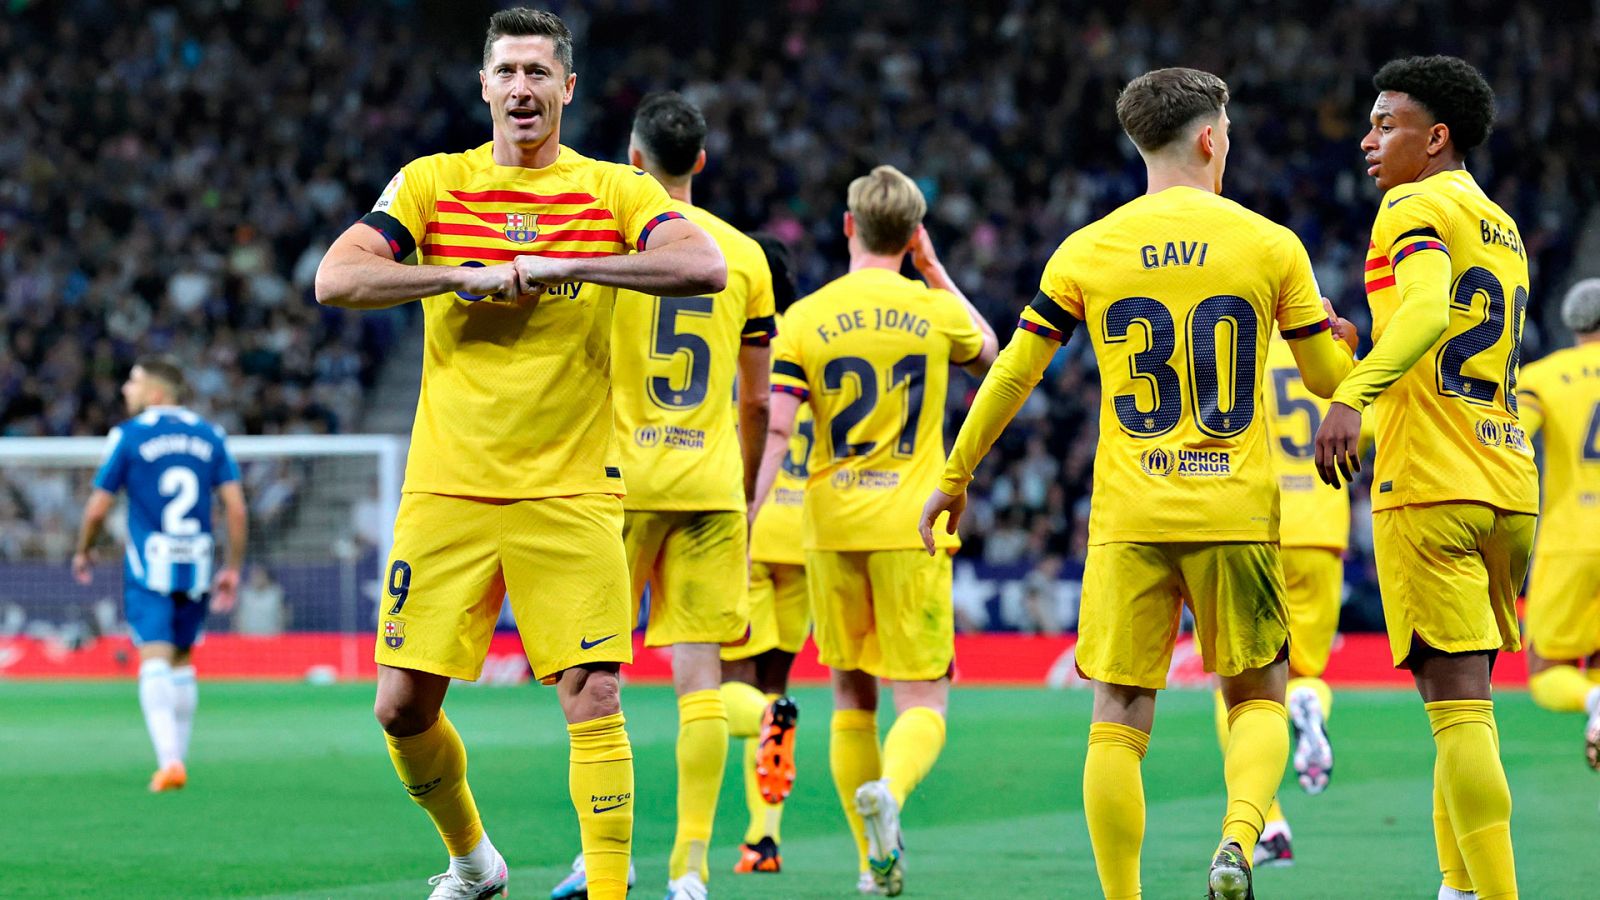 L'FC Barcelona masculí va guanyar ahir la lliga al camp de l'Espanyol